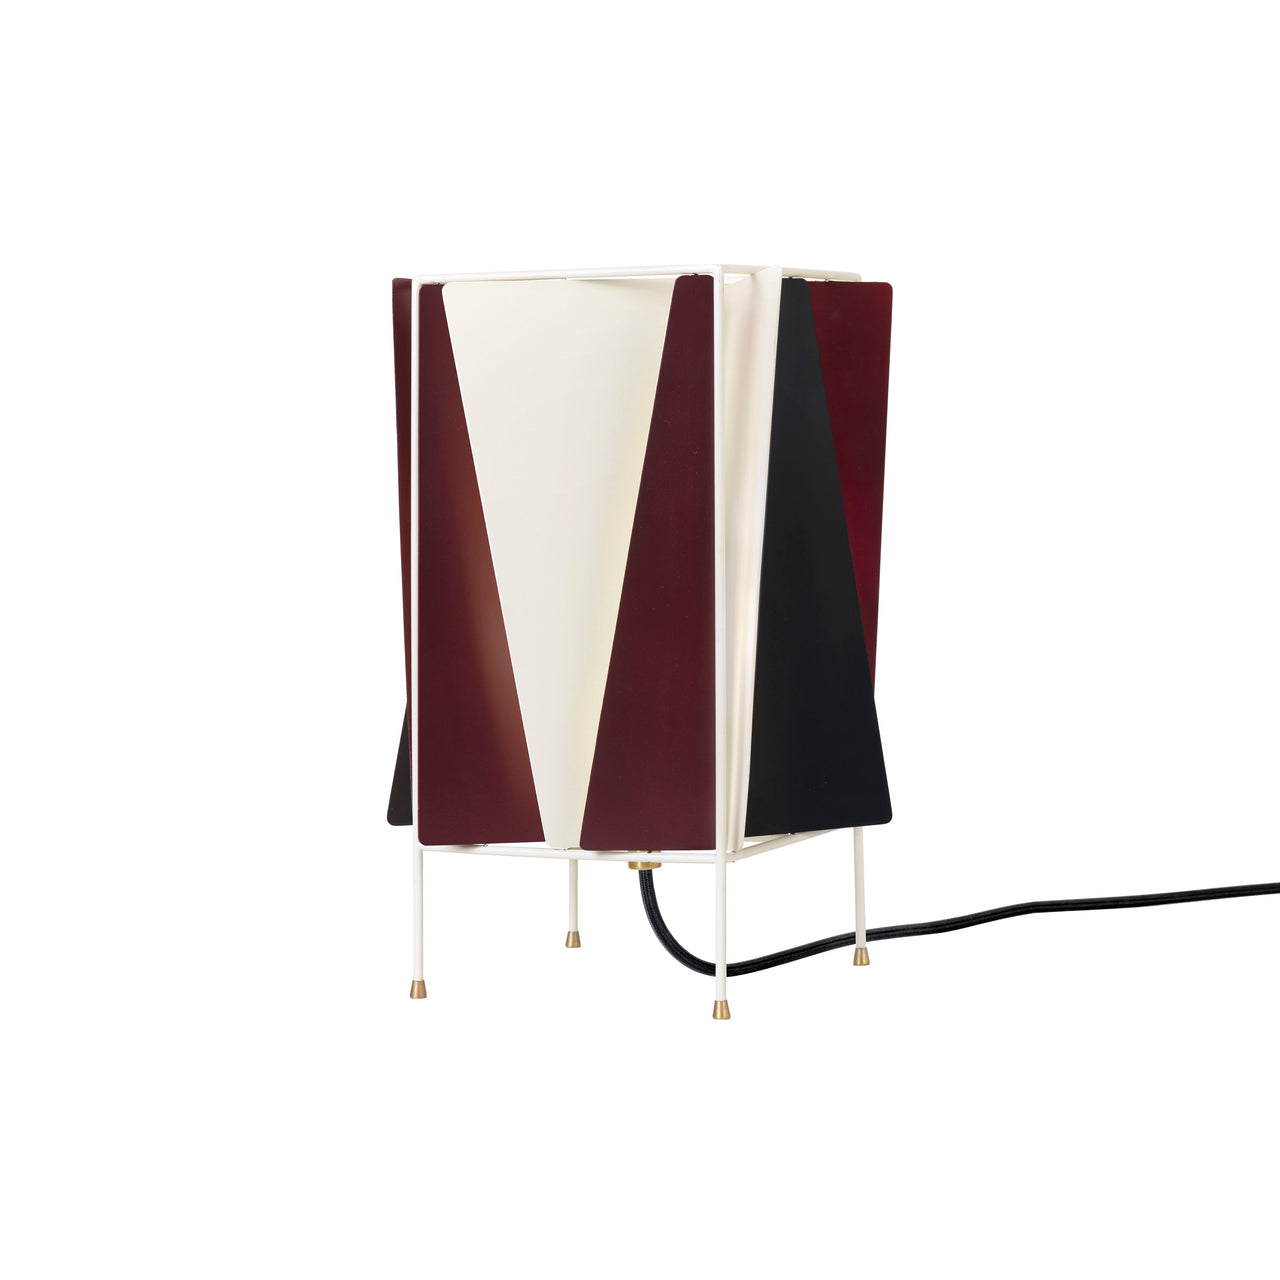 B-4 Table Lamp: Chianti Red Semi Matt